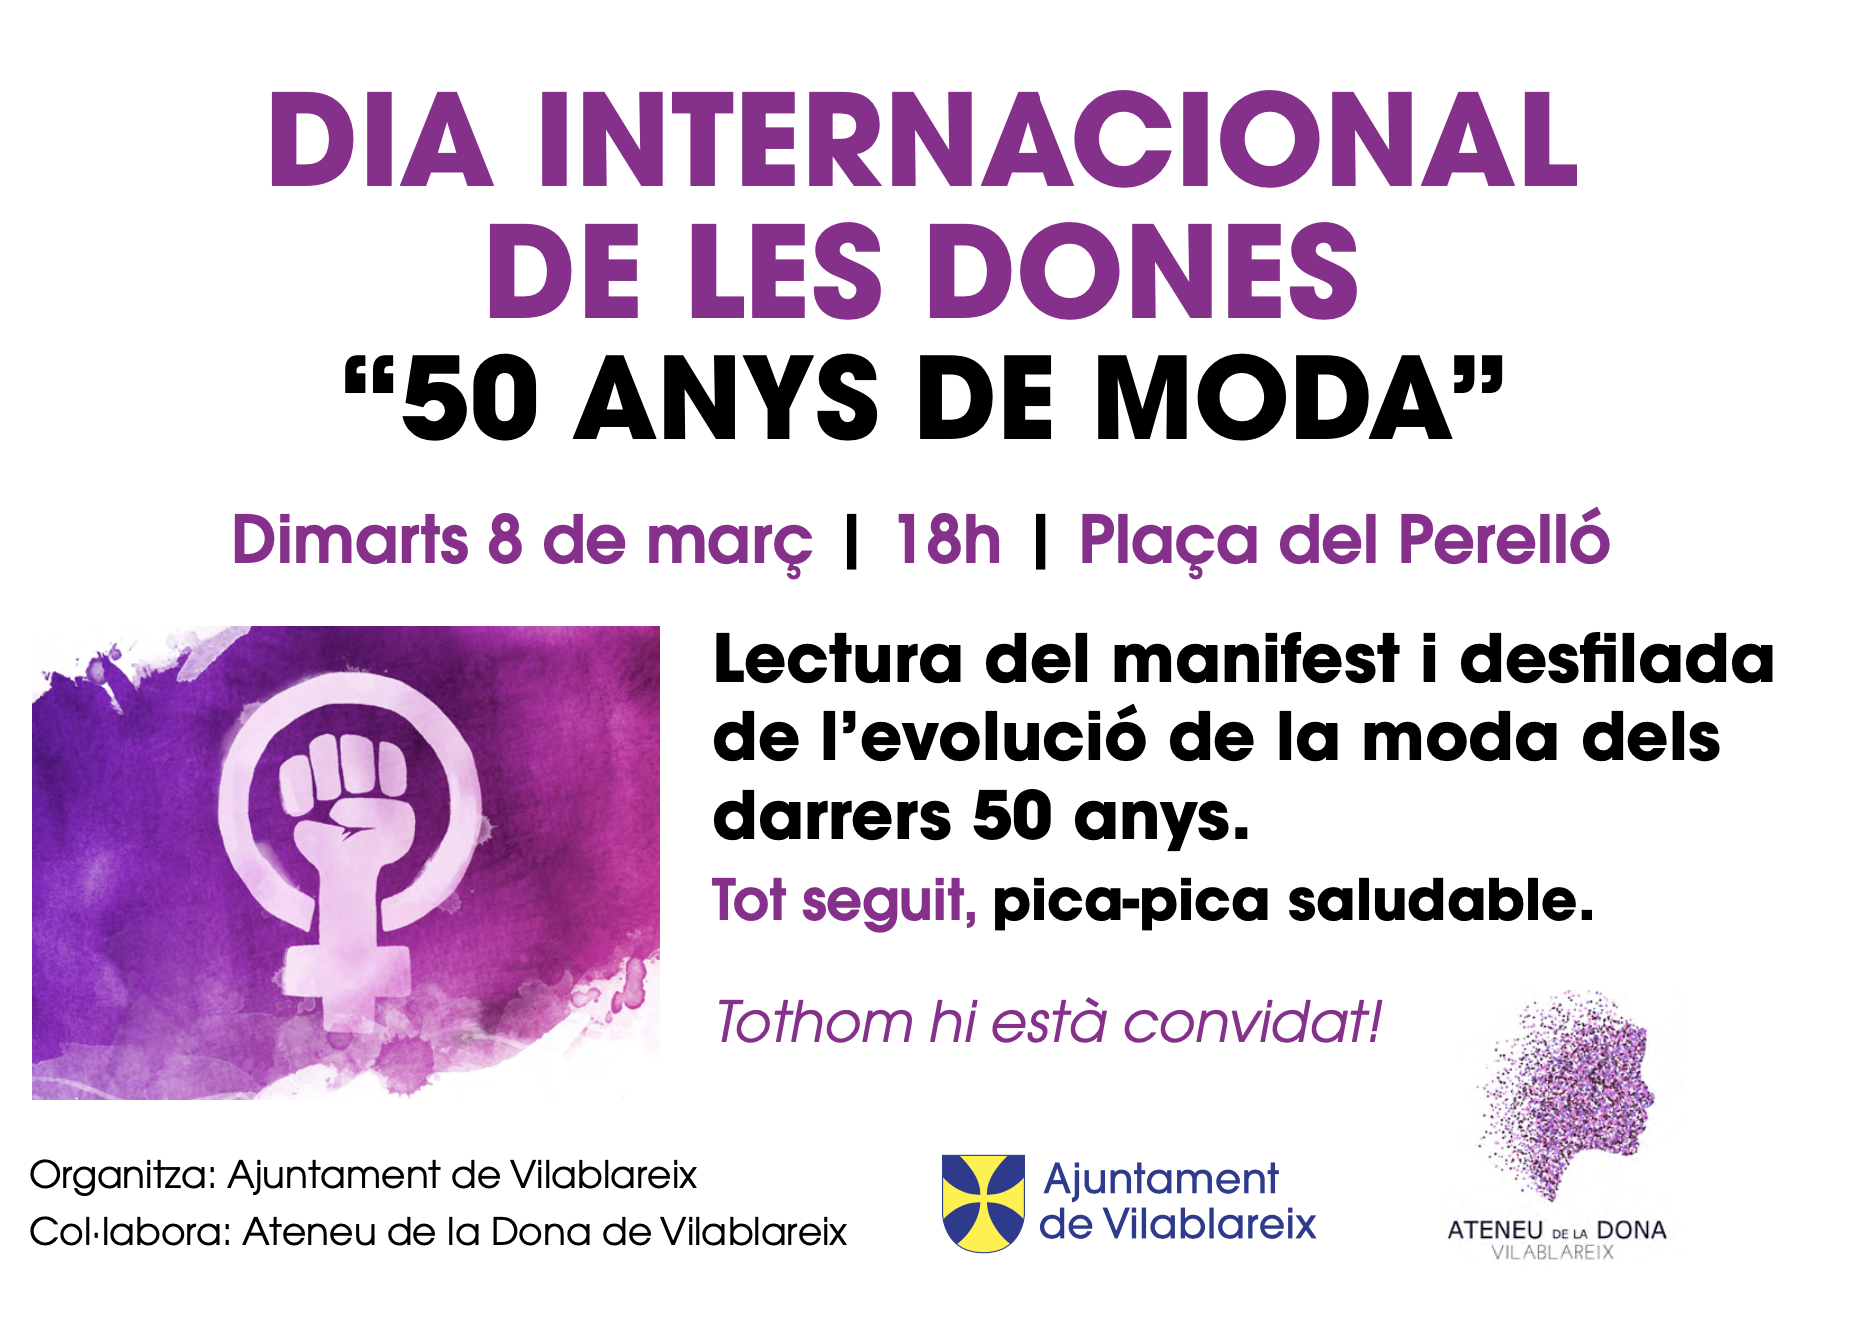 Dia Internacional de les dones